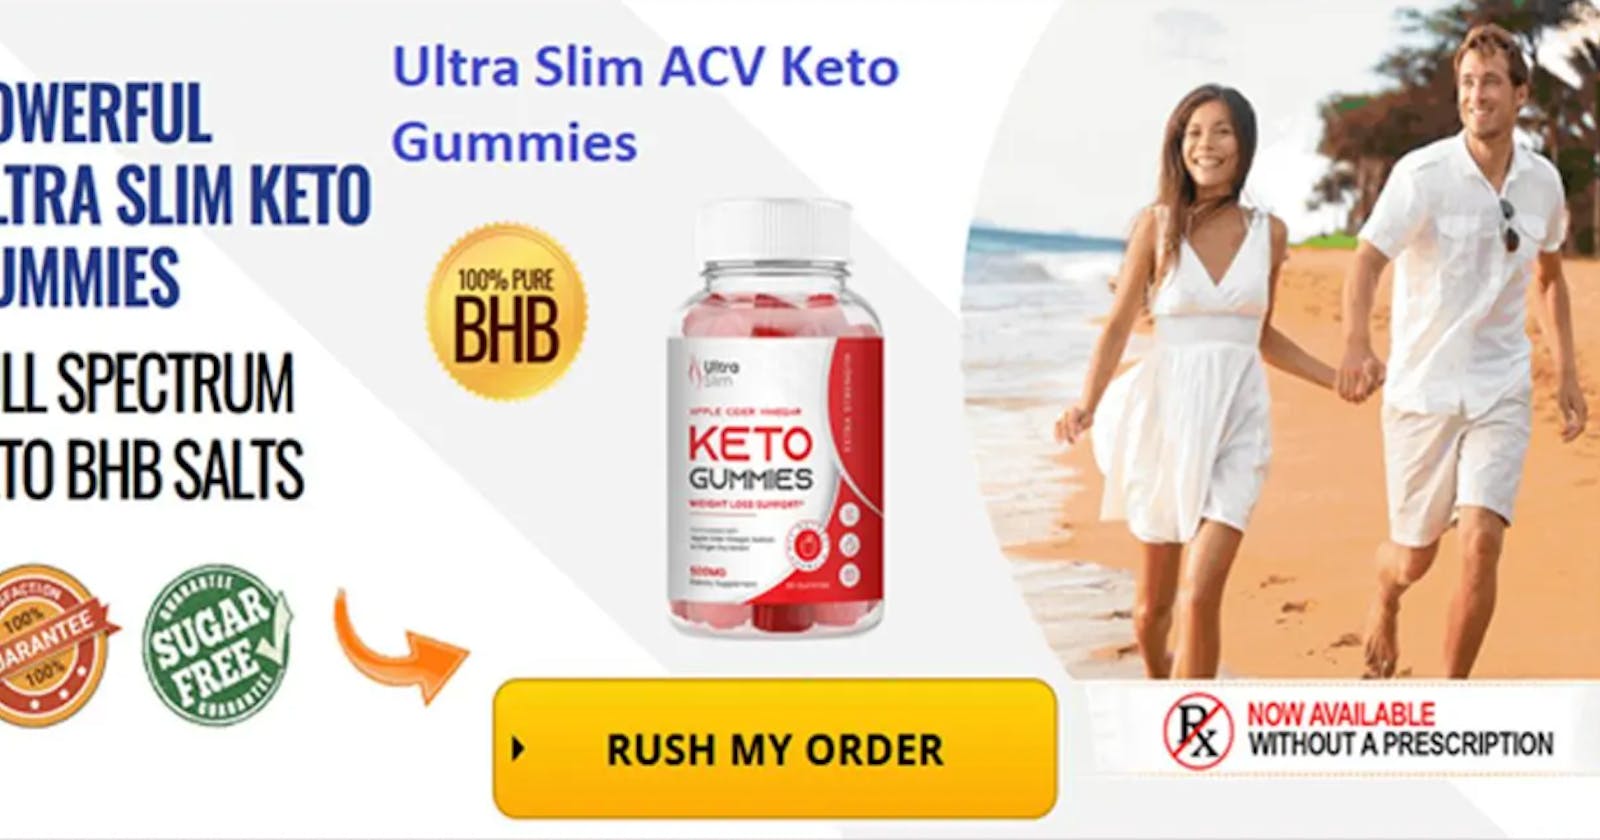 Ultra Slim ACV Keto Gummies Weight Loss Reviews?